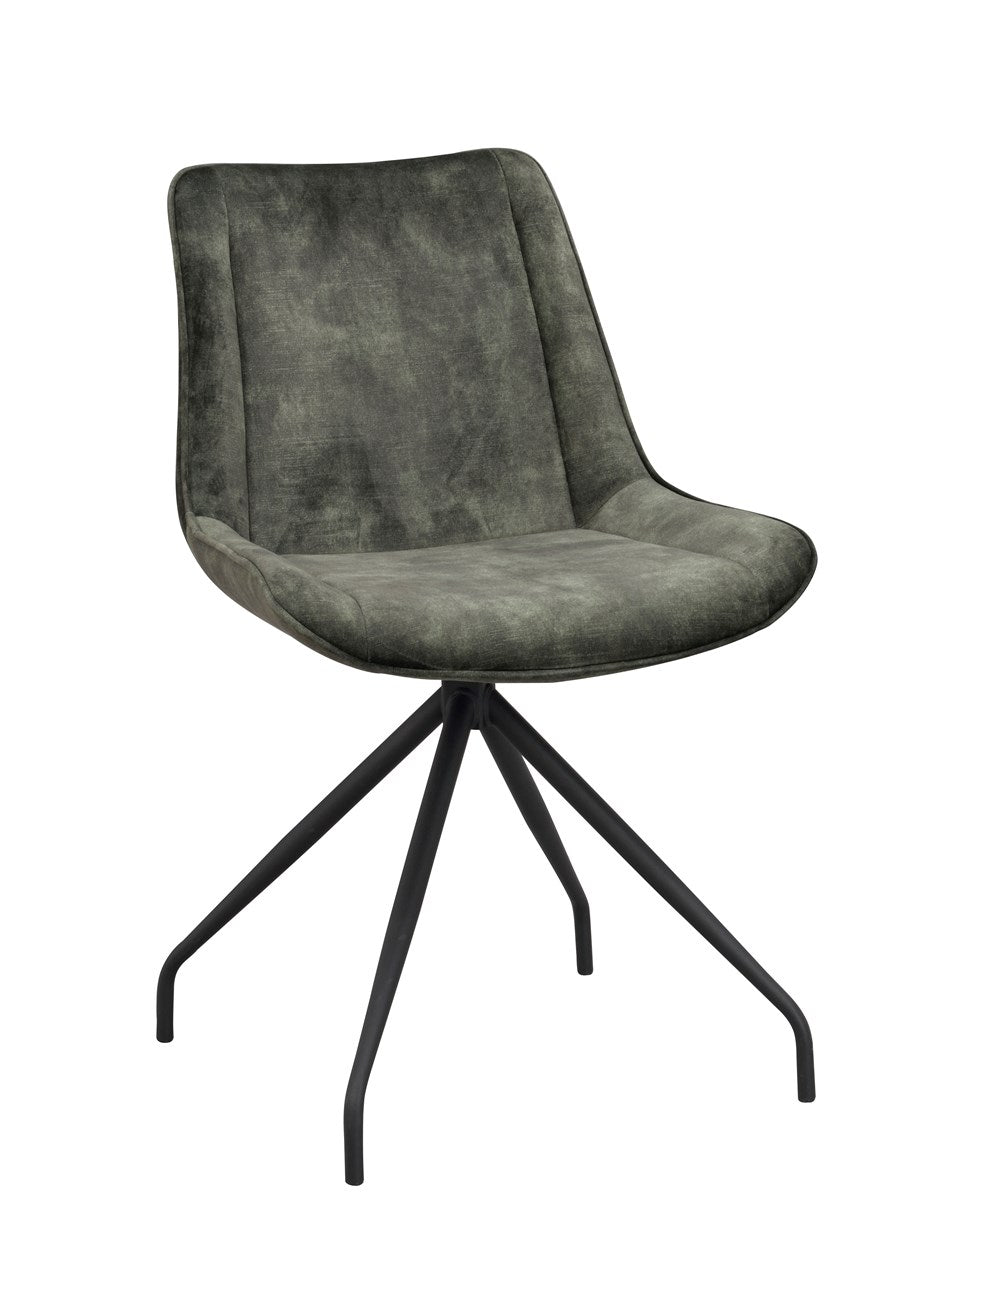 120081_b-rossport-chair-green-velvet_black